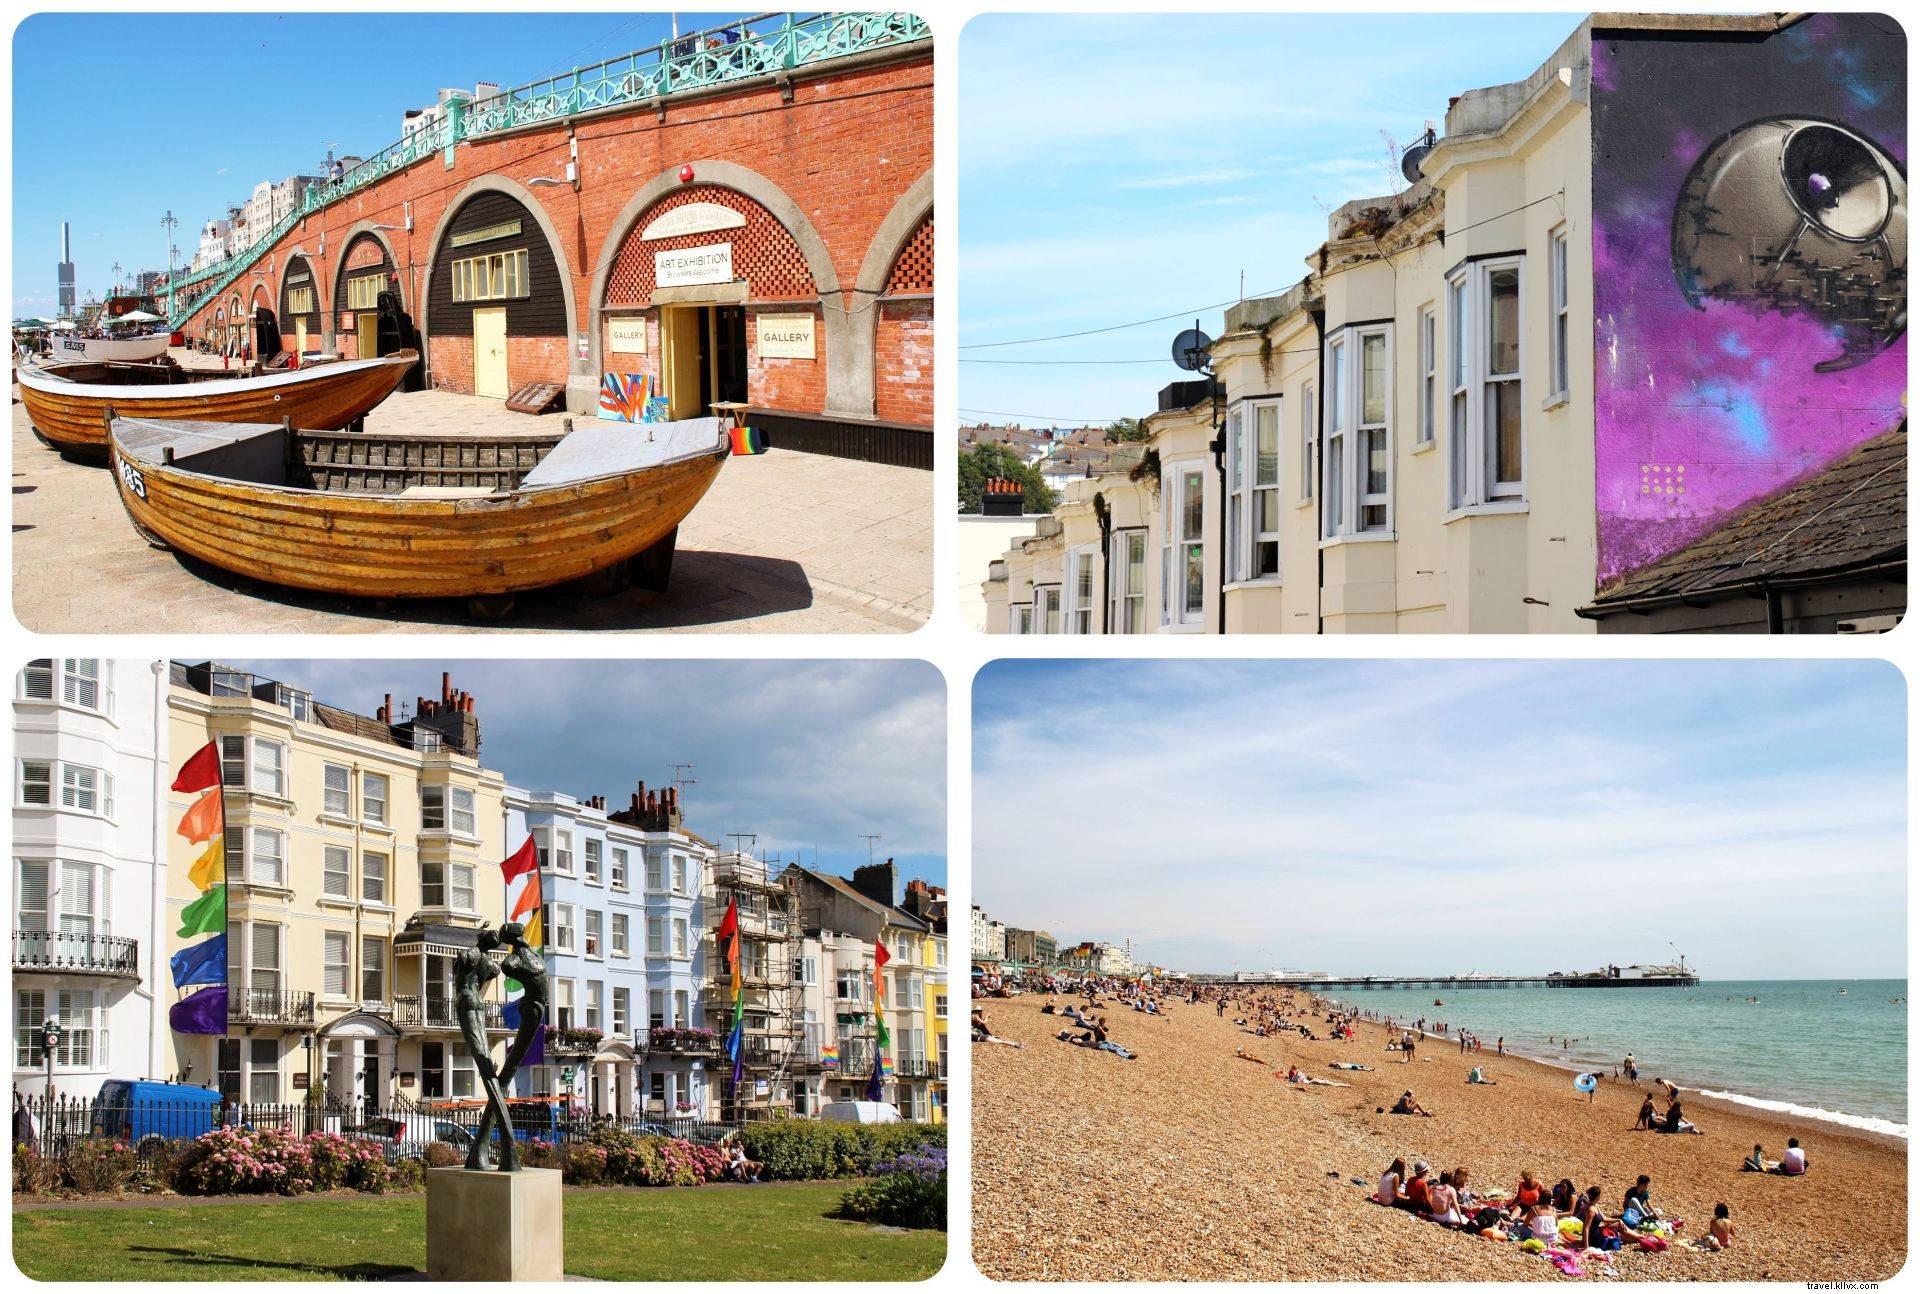 Visite Brighton:¿Qué hace que Brighton sea tan atractivo?